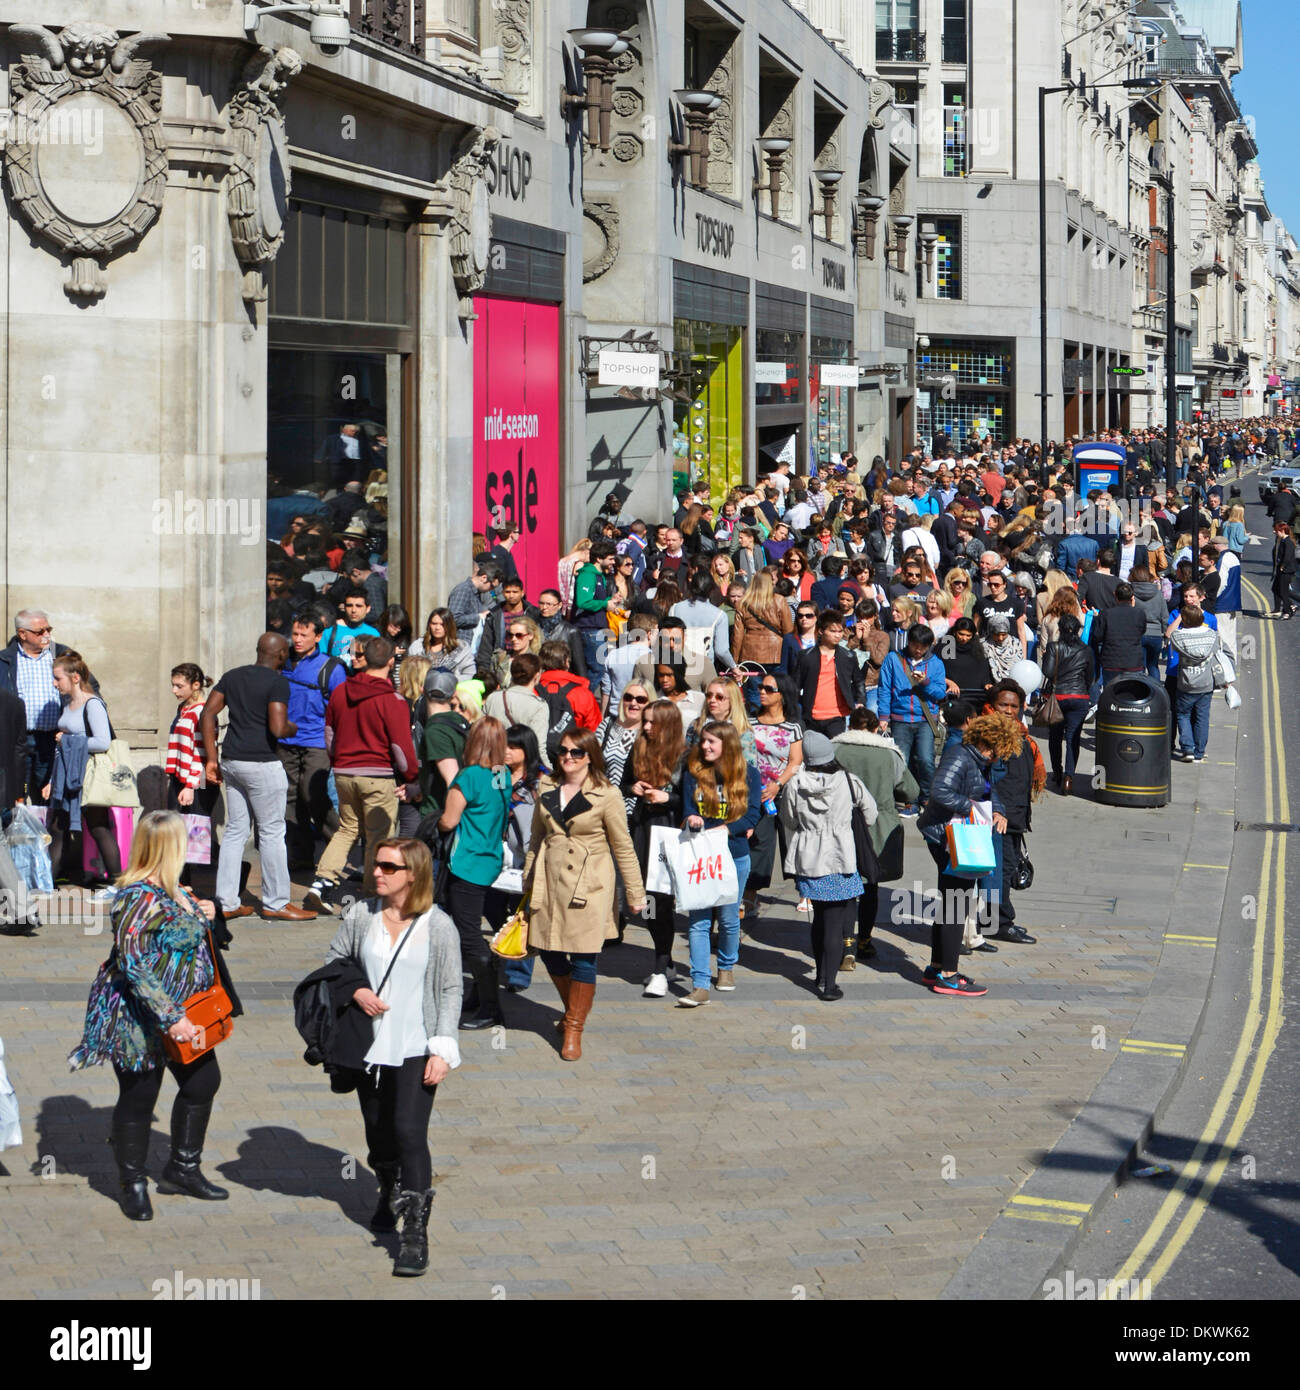 Foule de touristes et de clients dans la rue animée de Londres West End Oxford Street à l'extérieur de Topshop magasin avec vente sur Londres Angleterre Royaume-Uni Banque D'Images